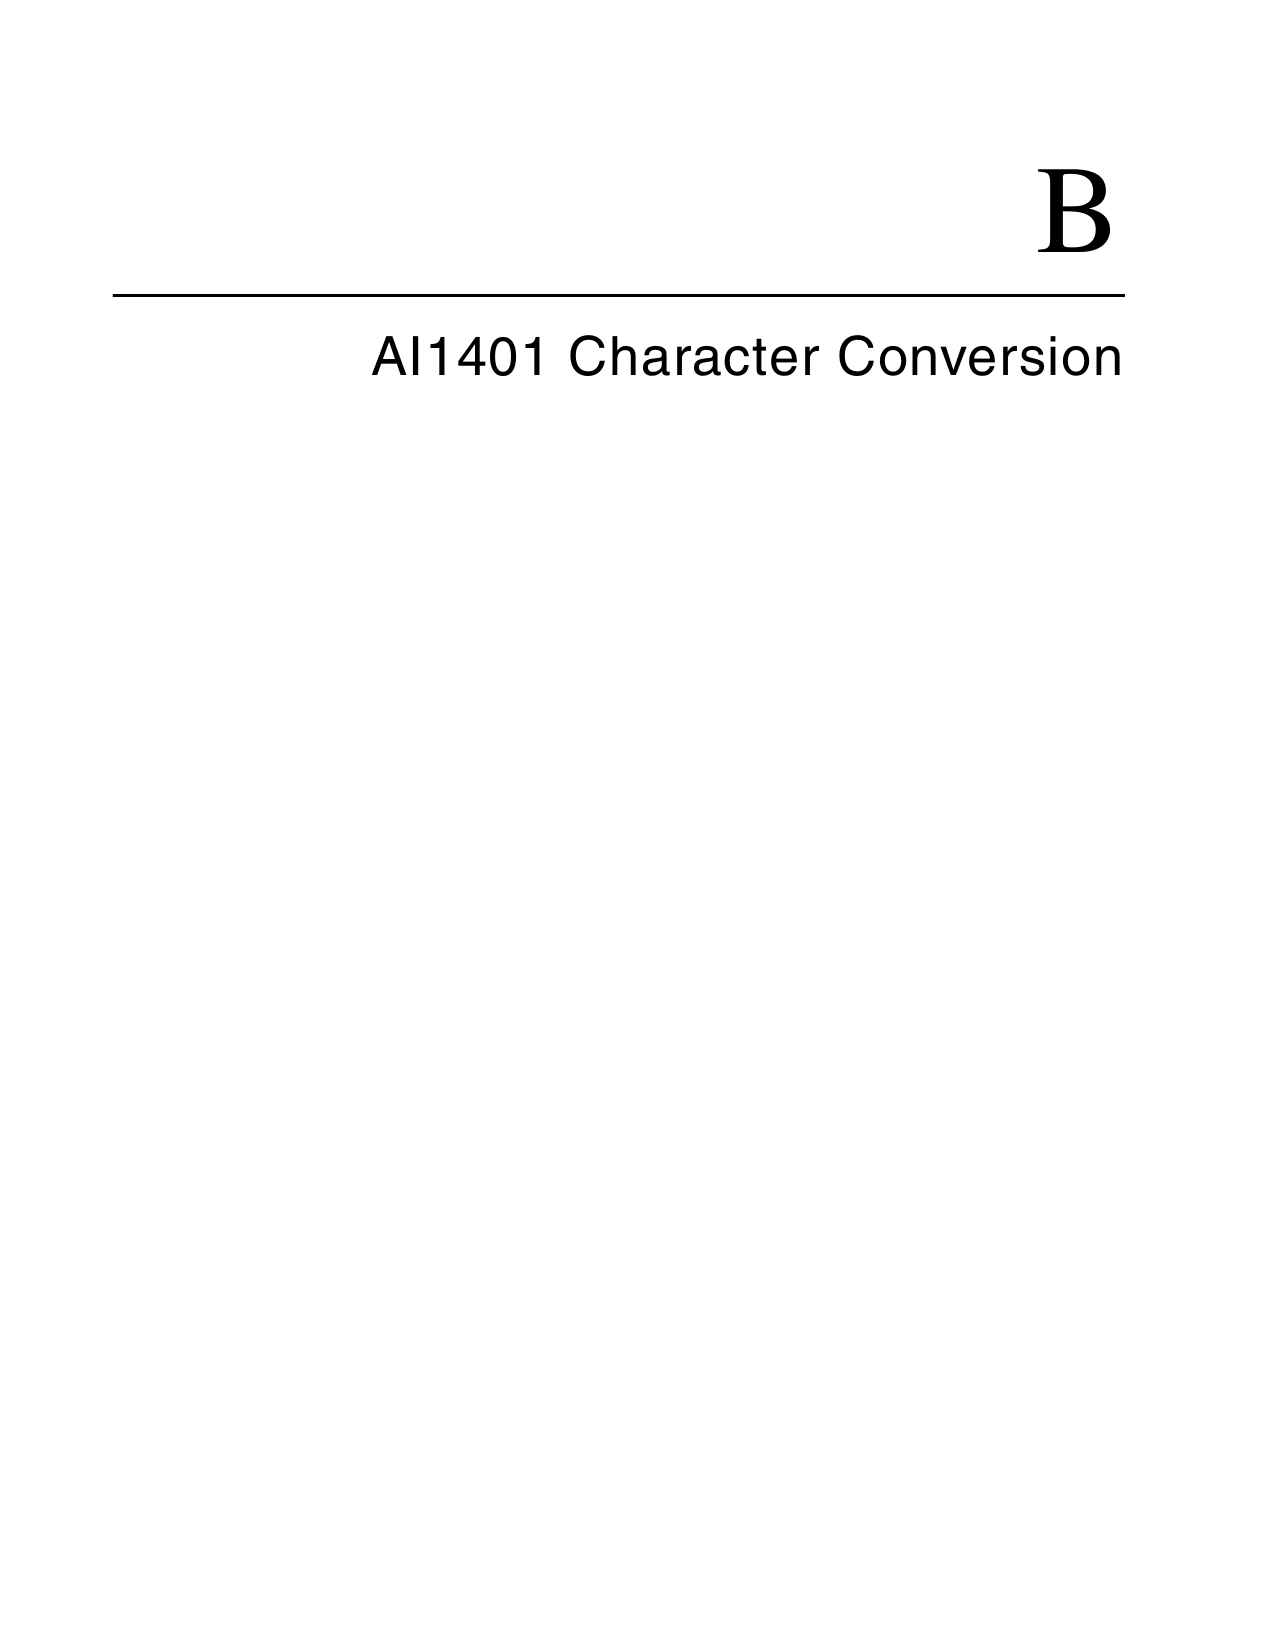 BAI1401 Character Conversion